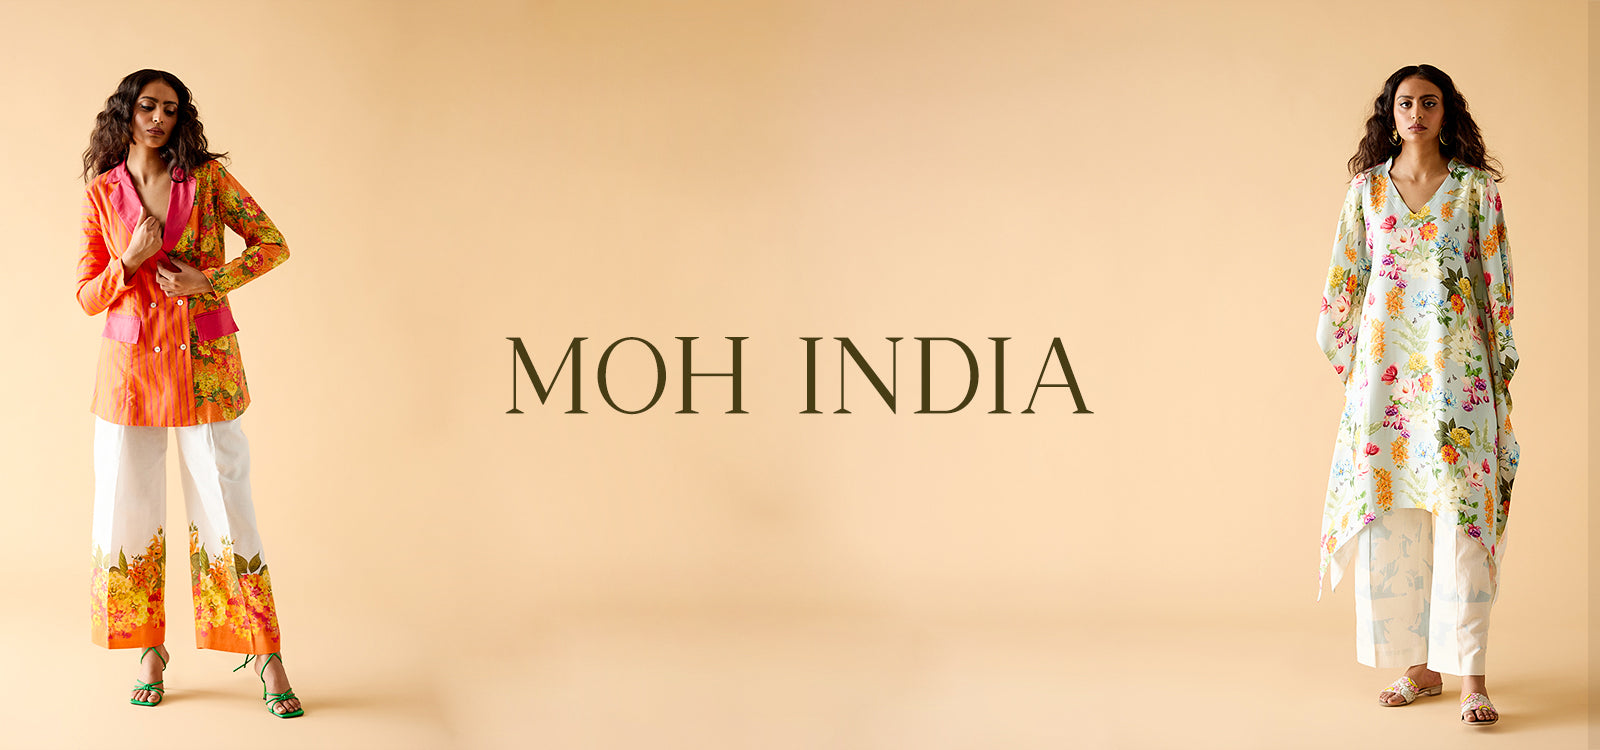 MOH INDIA